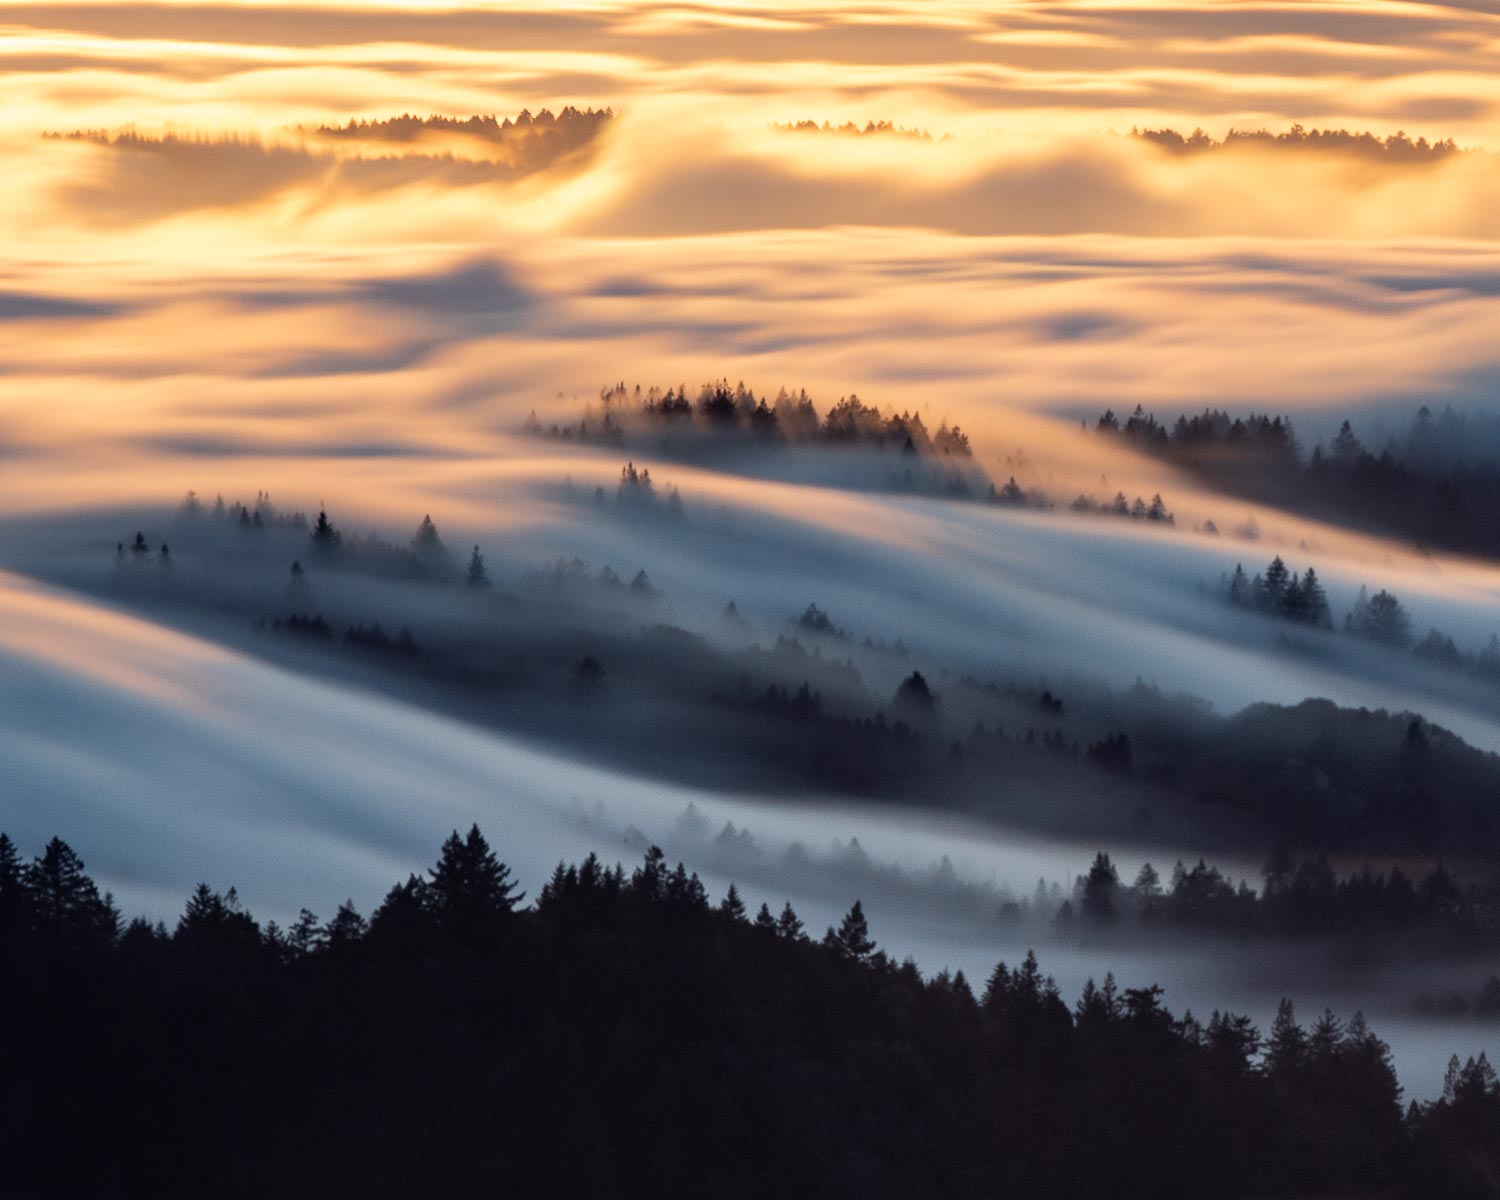 Fog enveloping Mt. Tamalpais, California, during sunset